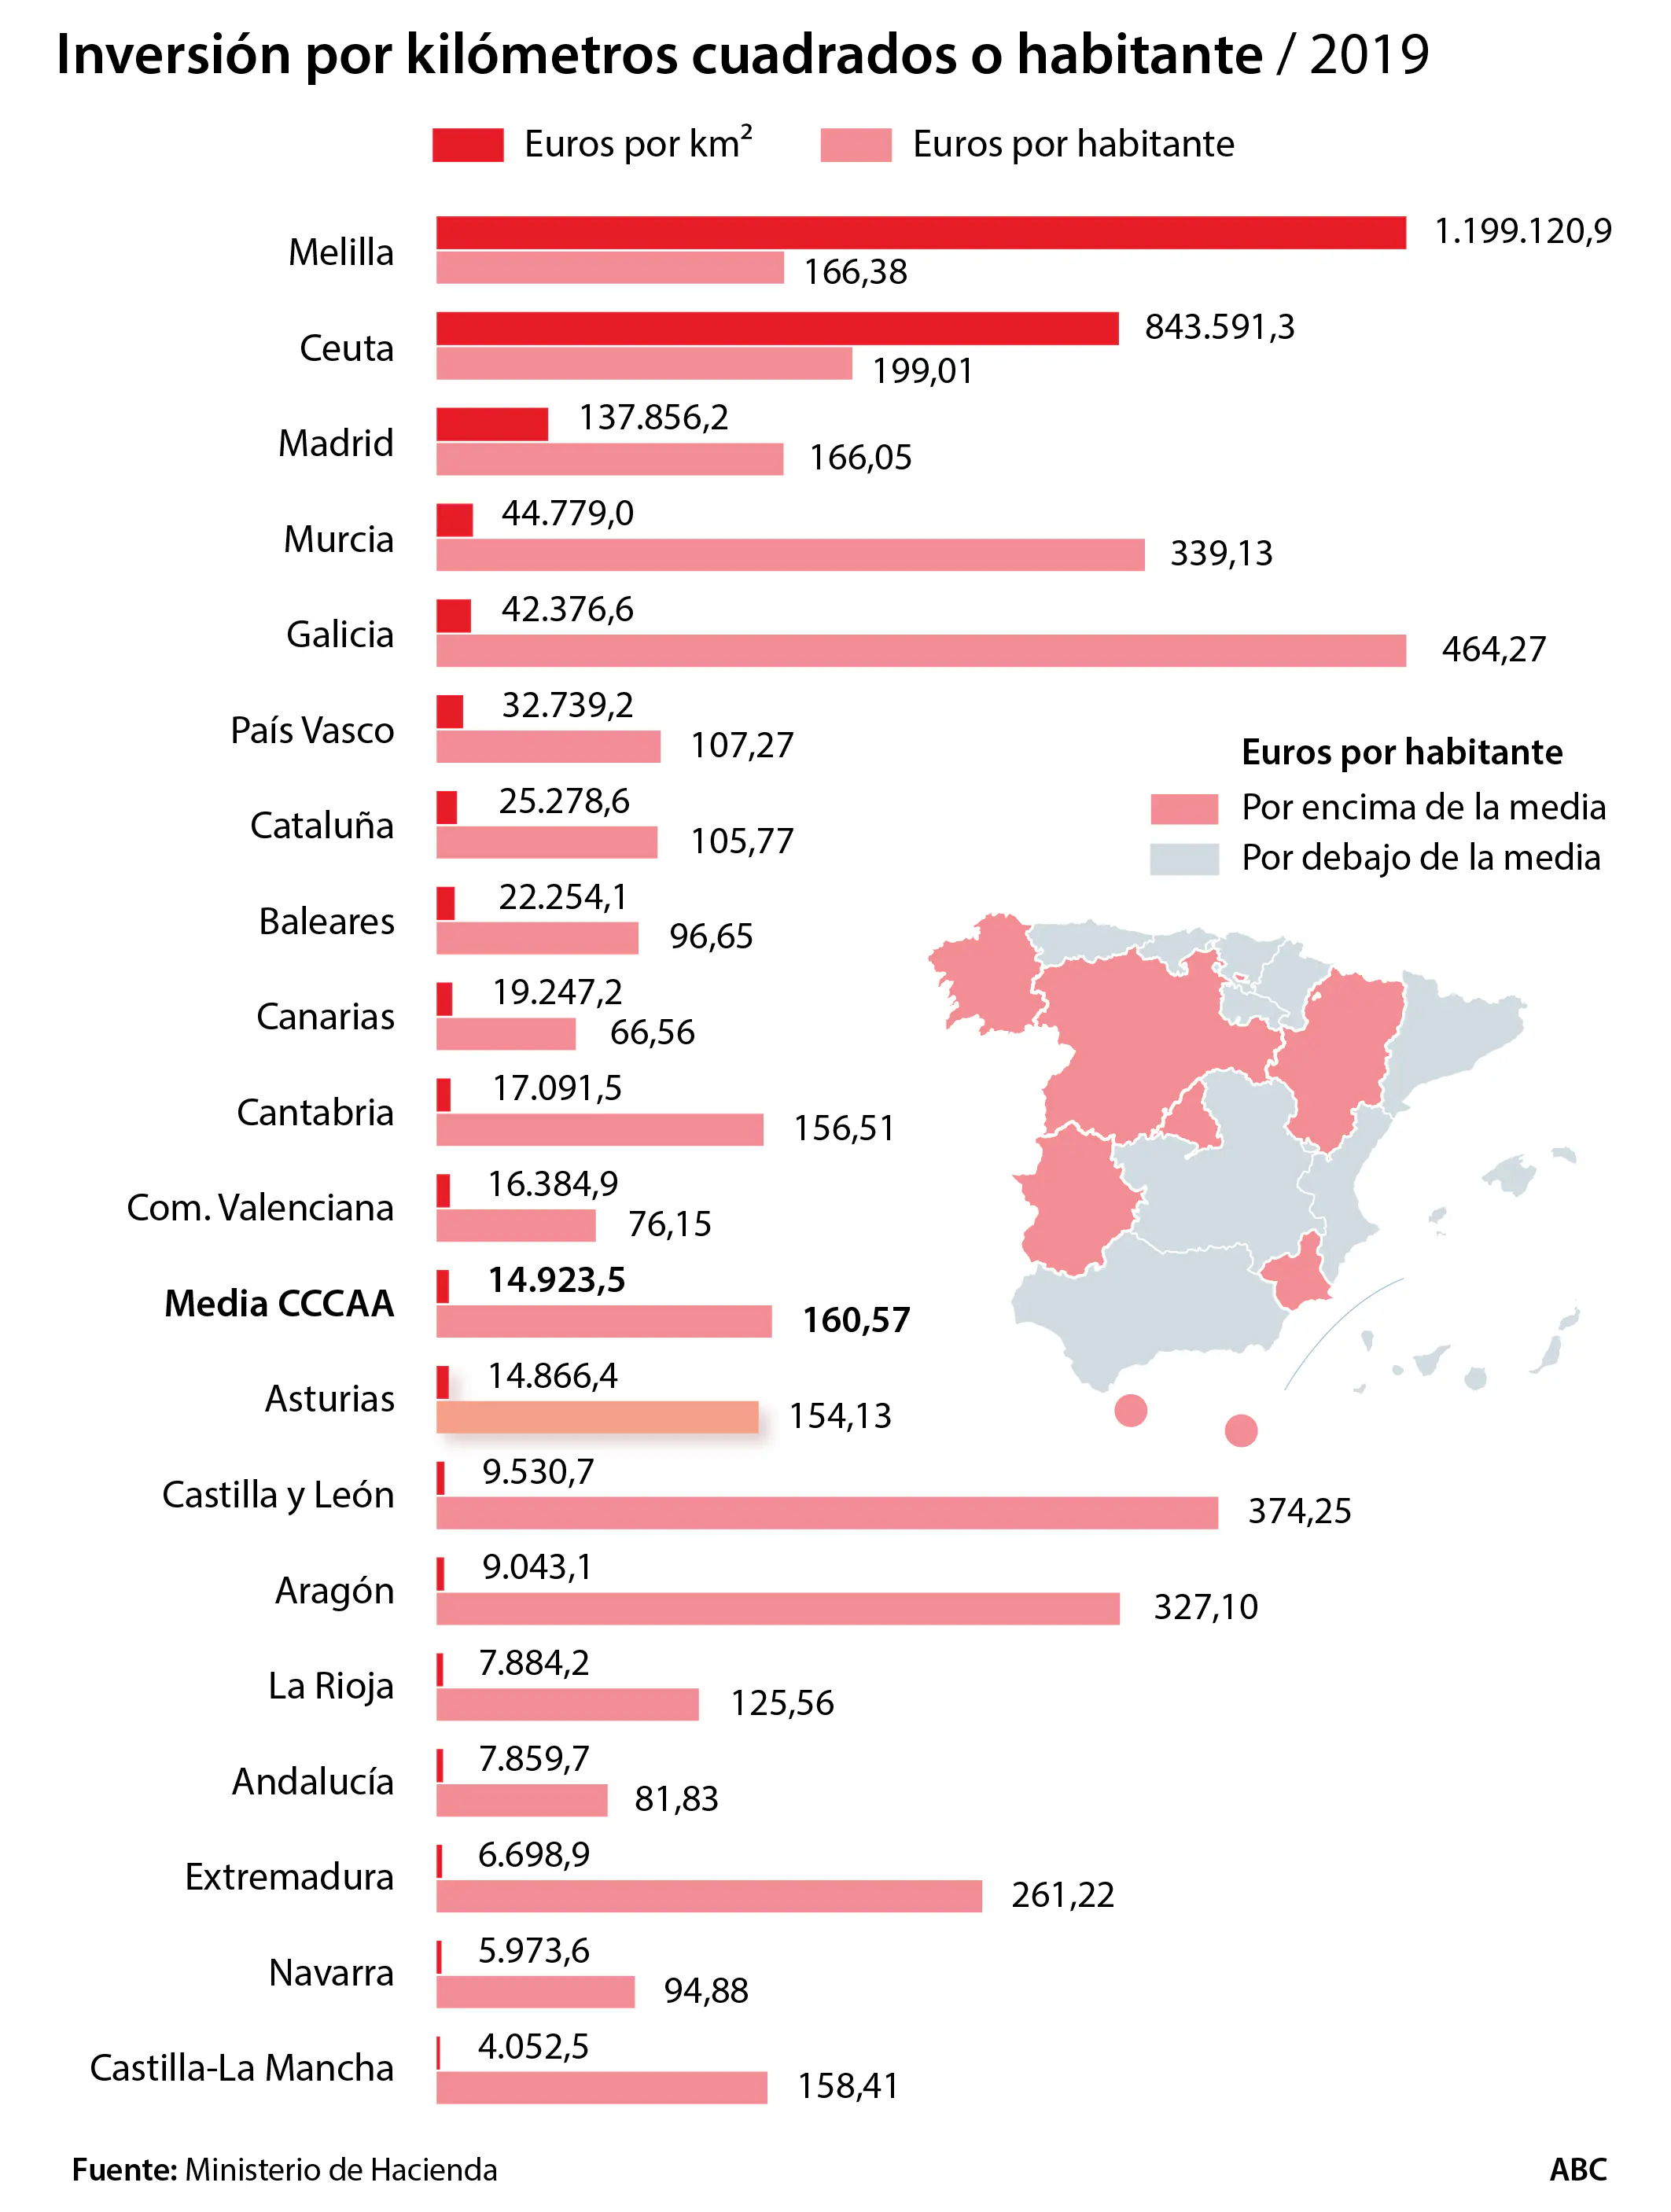 Las autonomías del PP, en las que más invierte Sánchez gracias a Rajoy